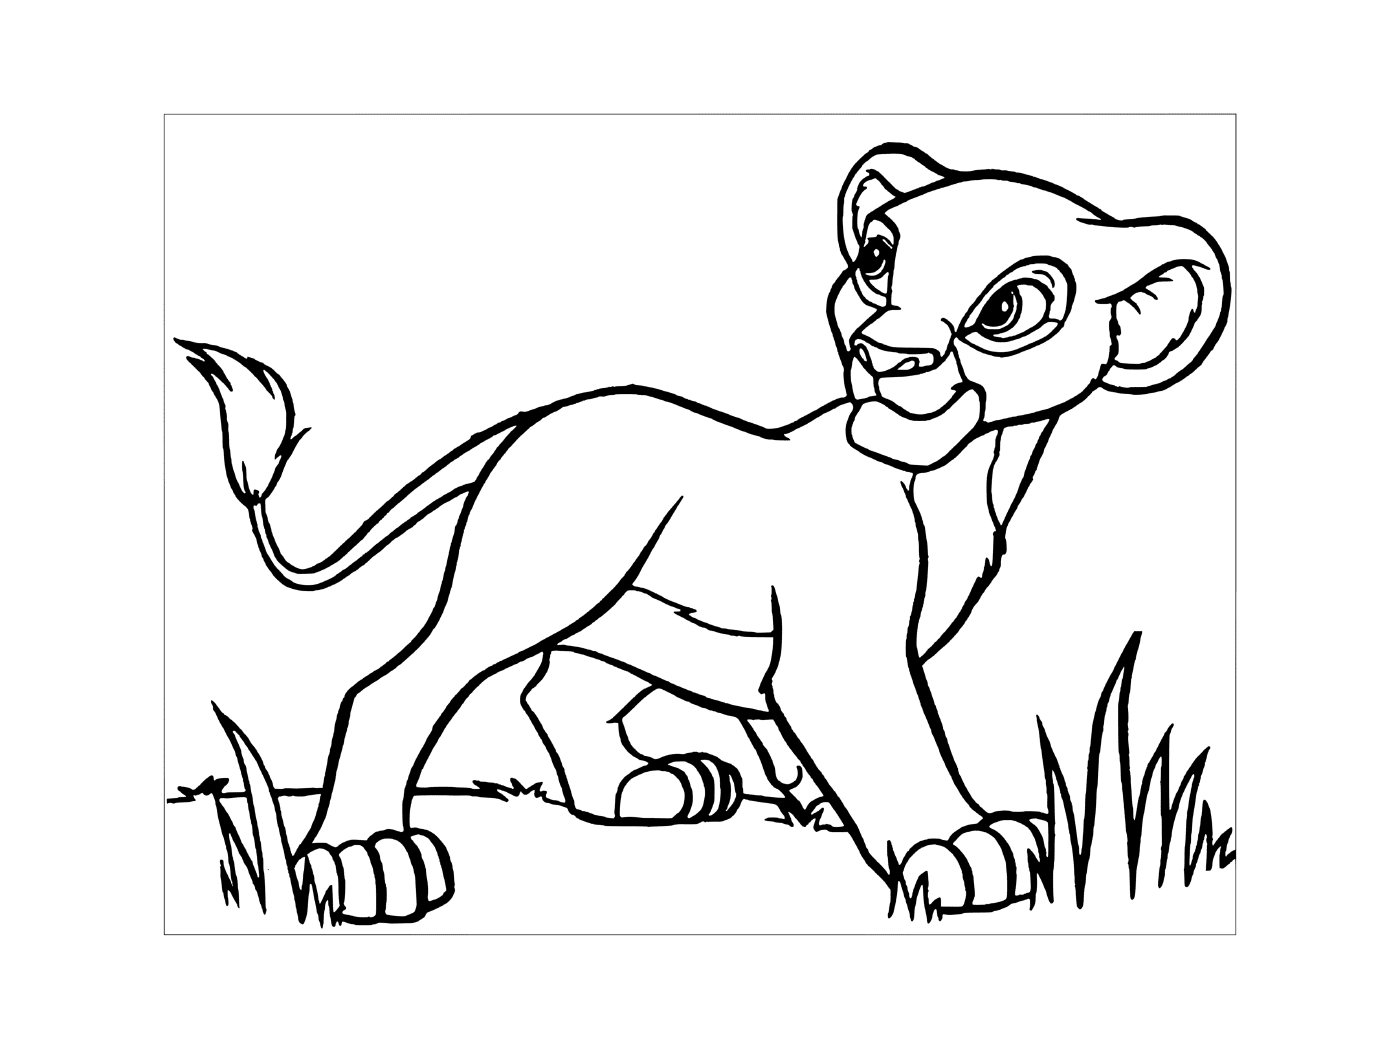  Simba in King Lion 3 